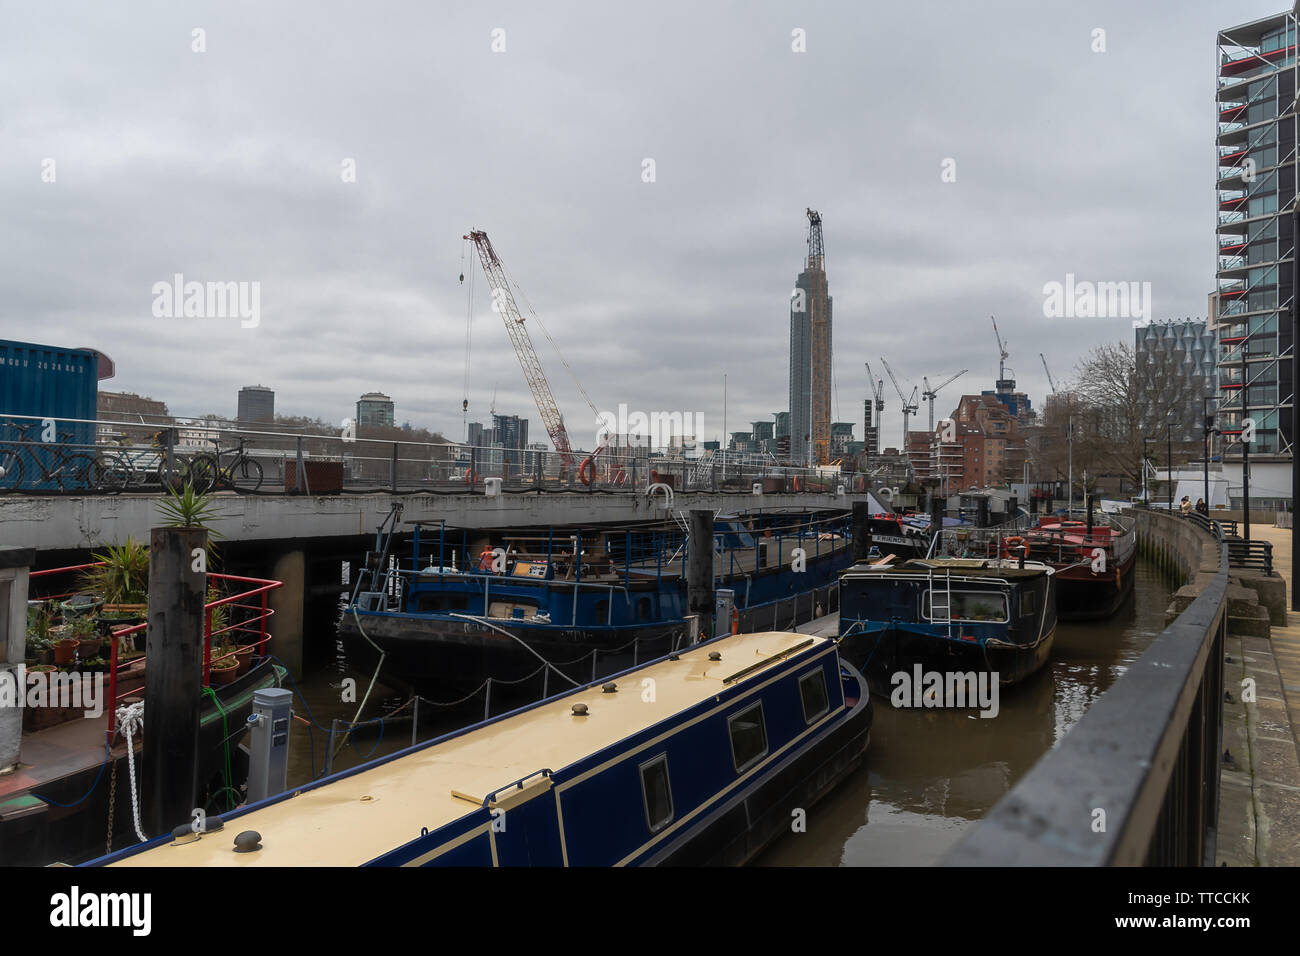 London - Nine Elms Pier, Battersea - March 20, 2019 Stock Photo